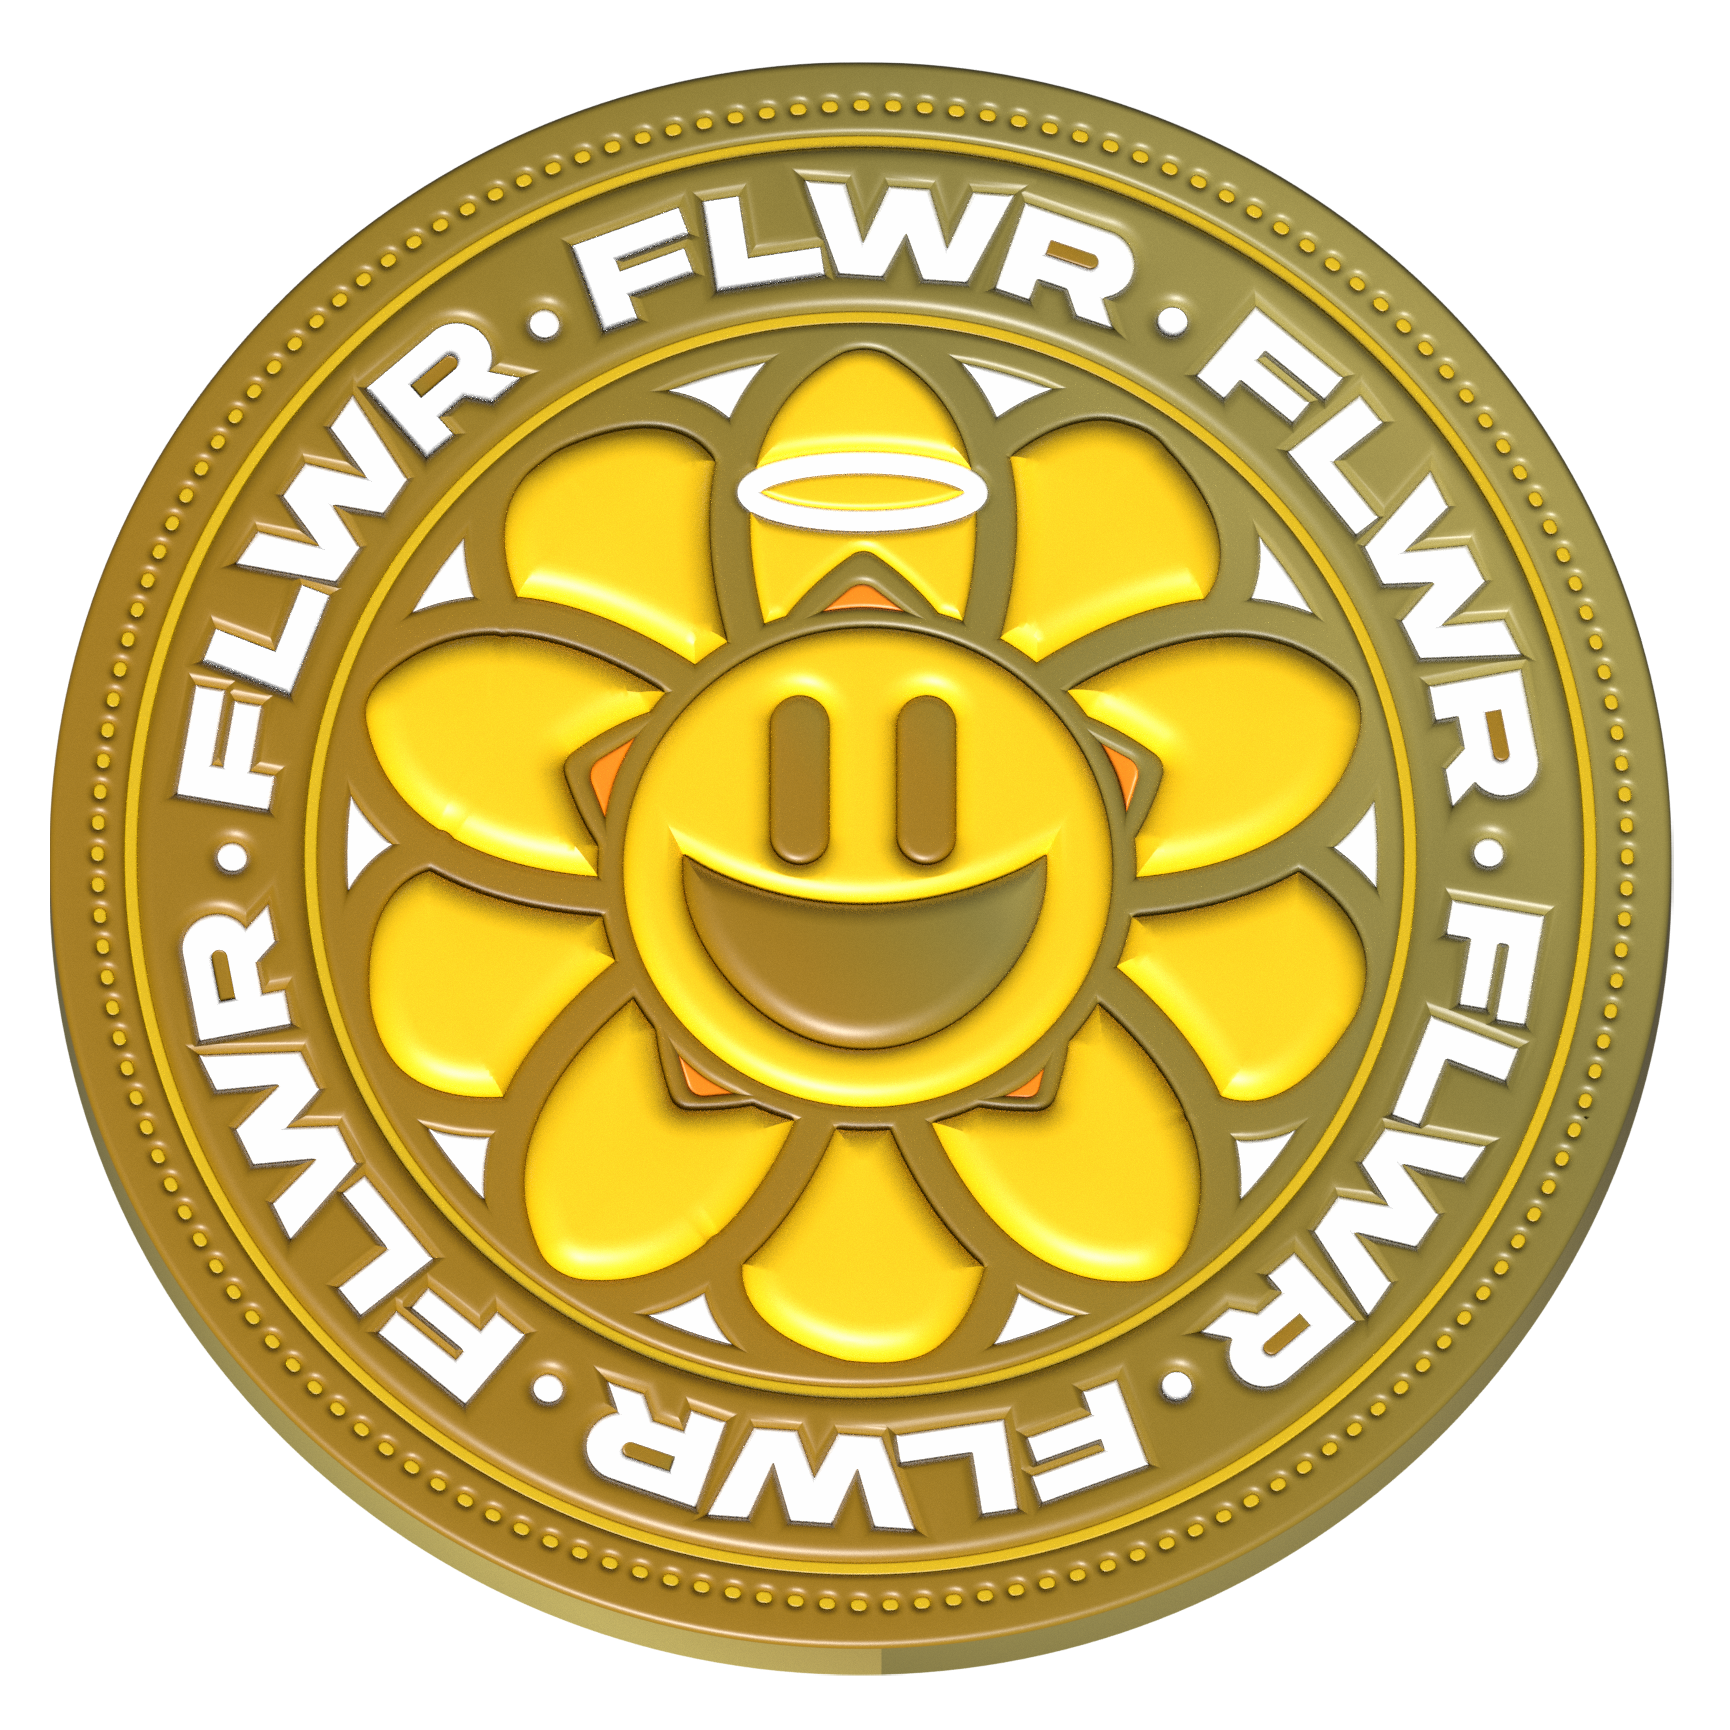 FLWR - Flower Token